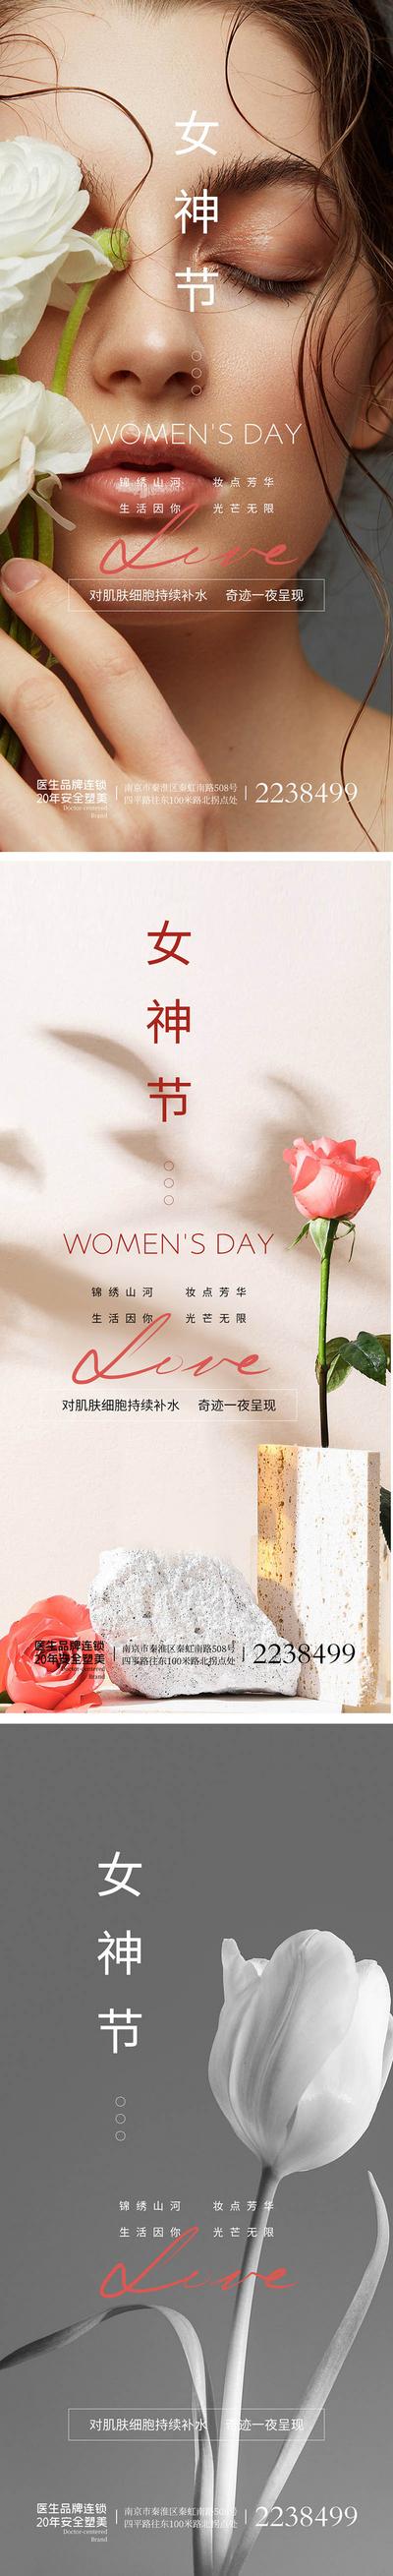 南门网 海报 公历节日 女王节 女神节 38 妇女节